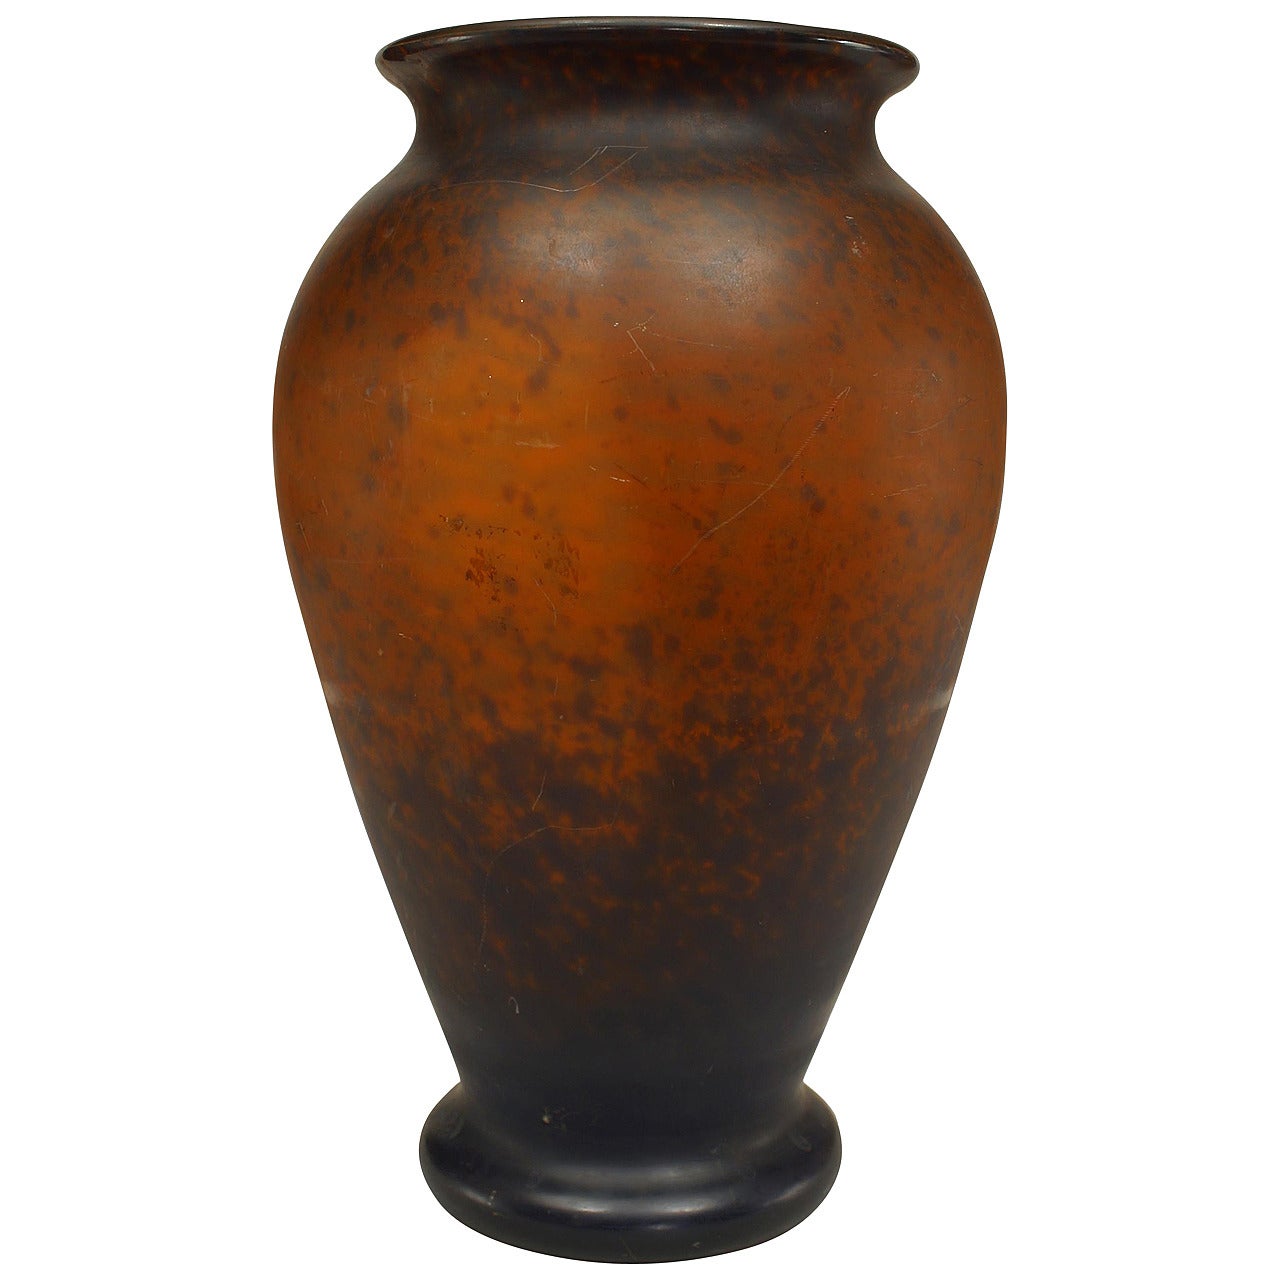 Braune Vase aus gesprenkeltem Glas im Art nouveau-Stil